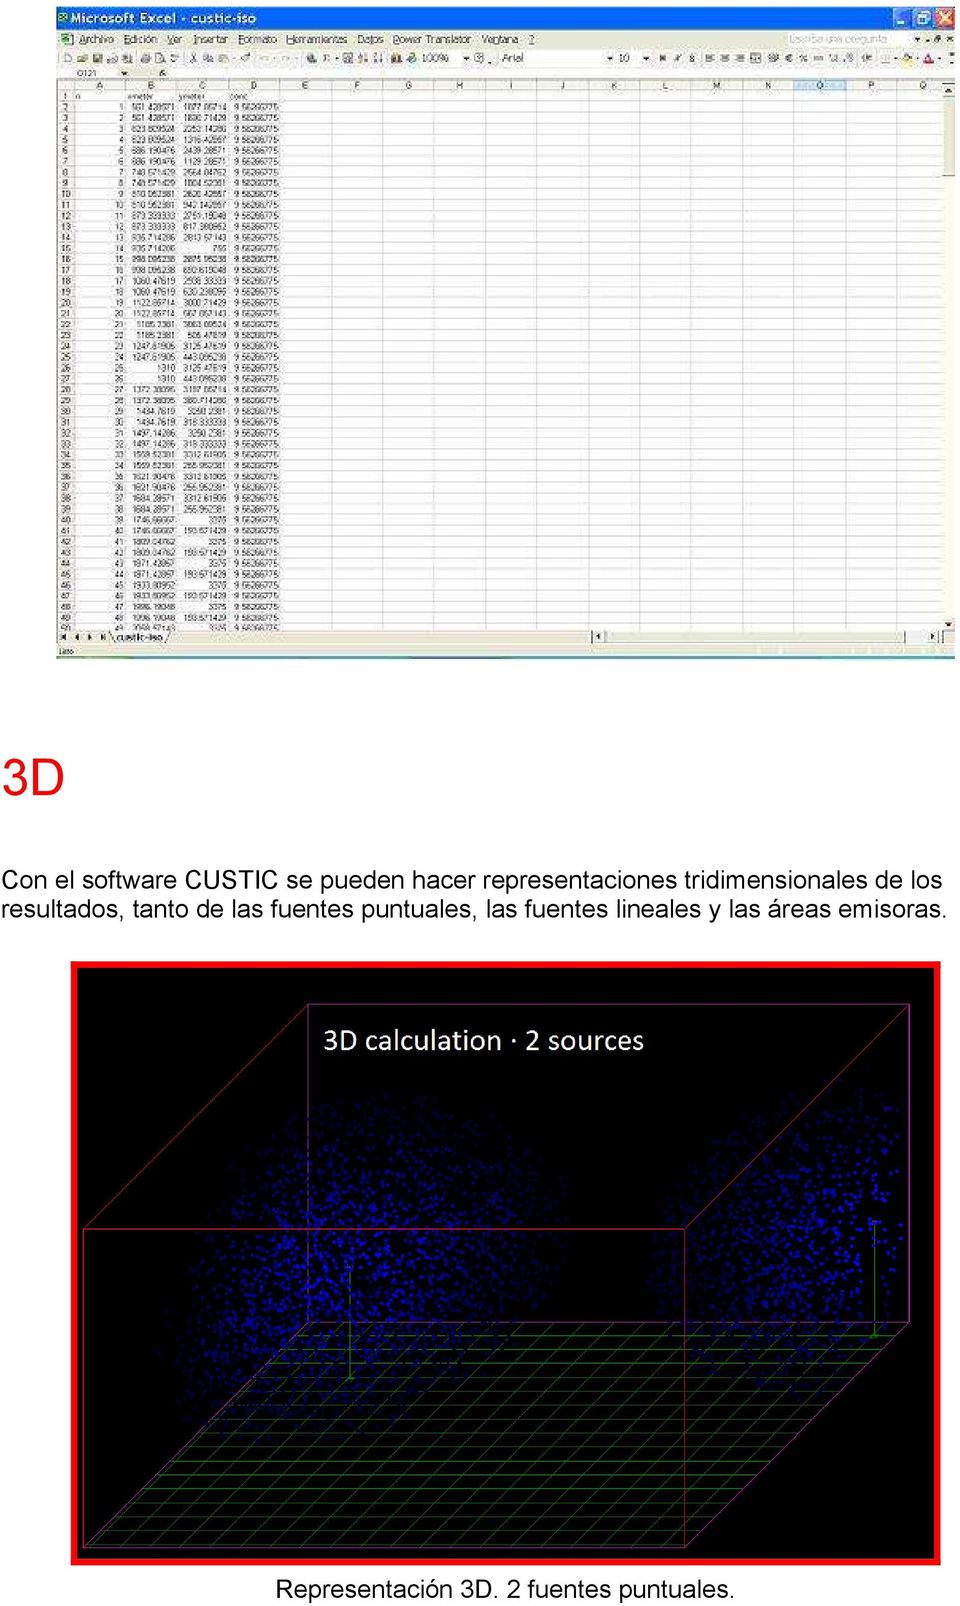 3D Con el software CUSTIC se pueden hacer representaciones tridimensionales de